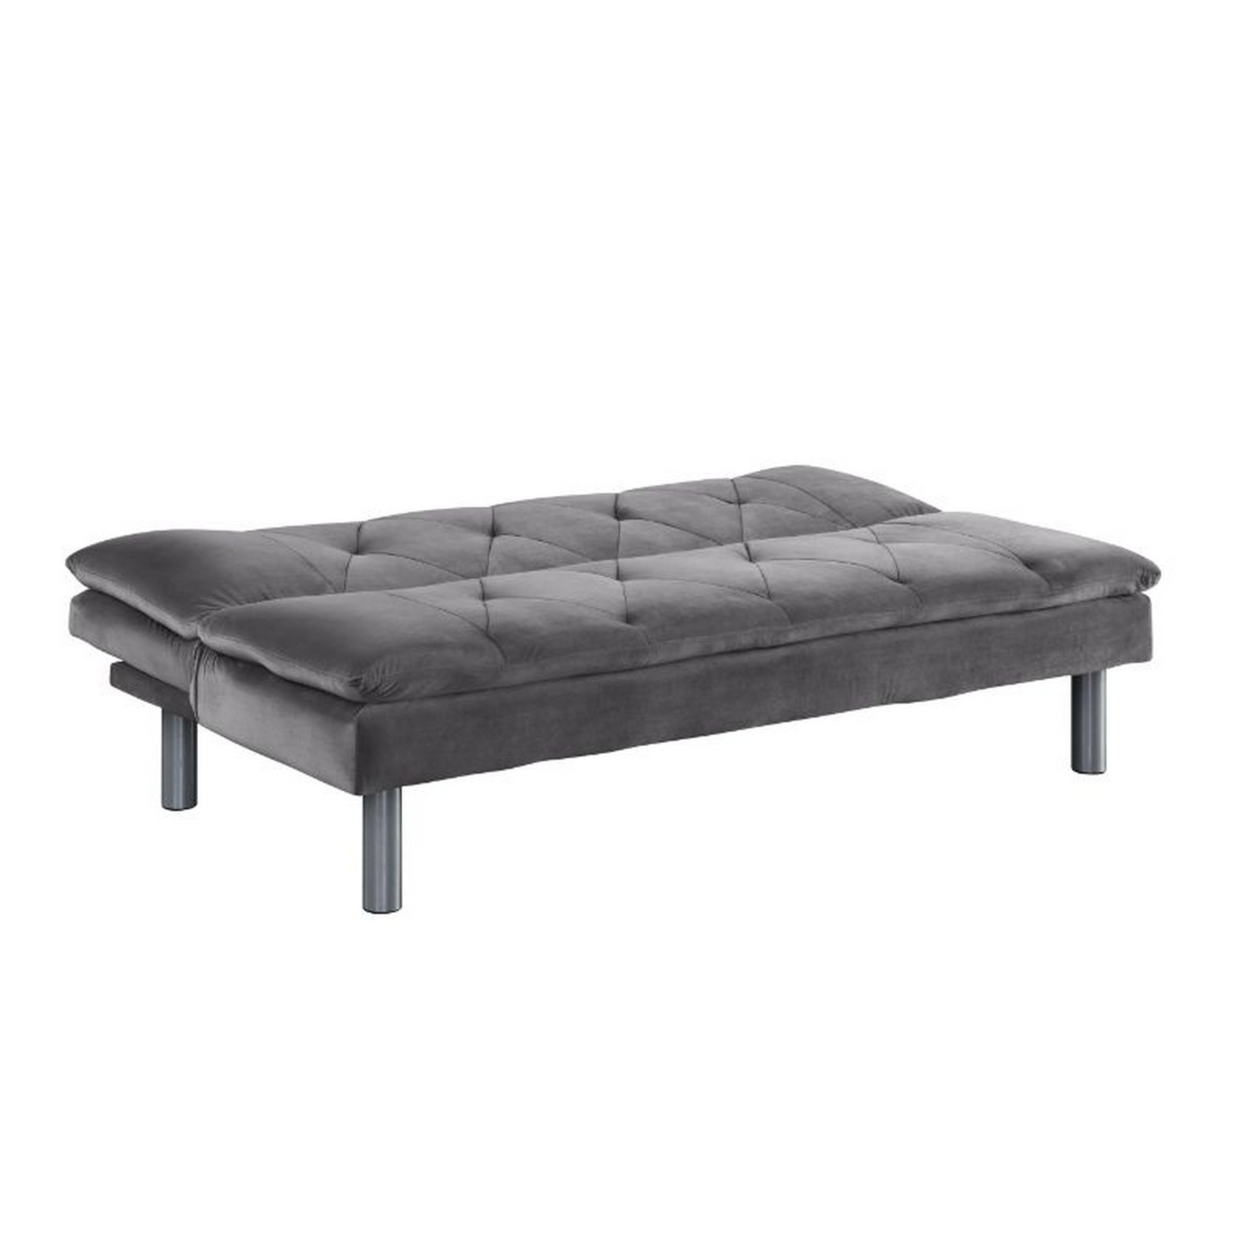 Adjustable Sofa With Diamond Tufting And Metal Legs, Gray- Saltoro Sherpi